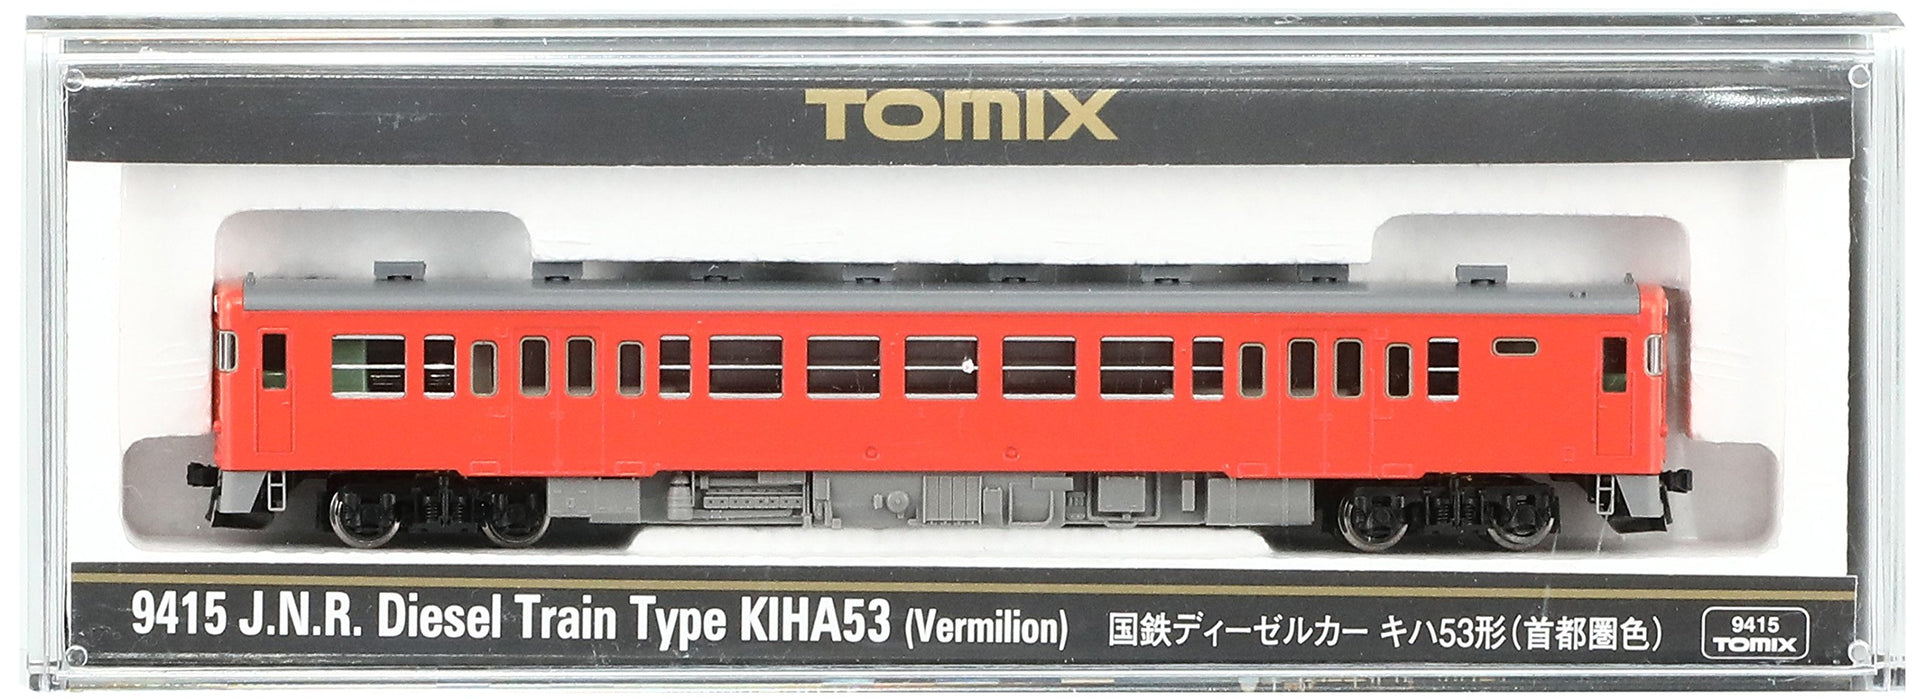 Tomytec Tomix N Gauge Kiha53 Voiture diesel – Modèle ferroviaire en couleur zone métropolitaine